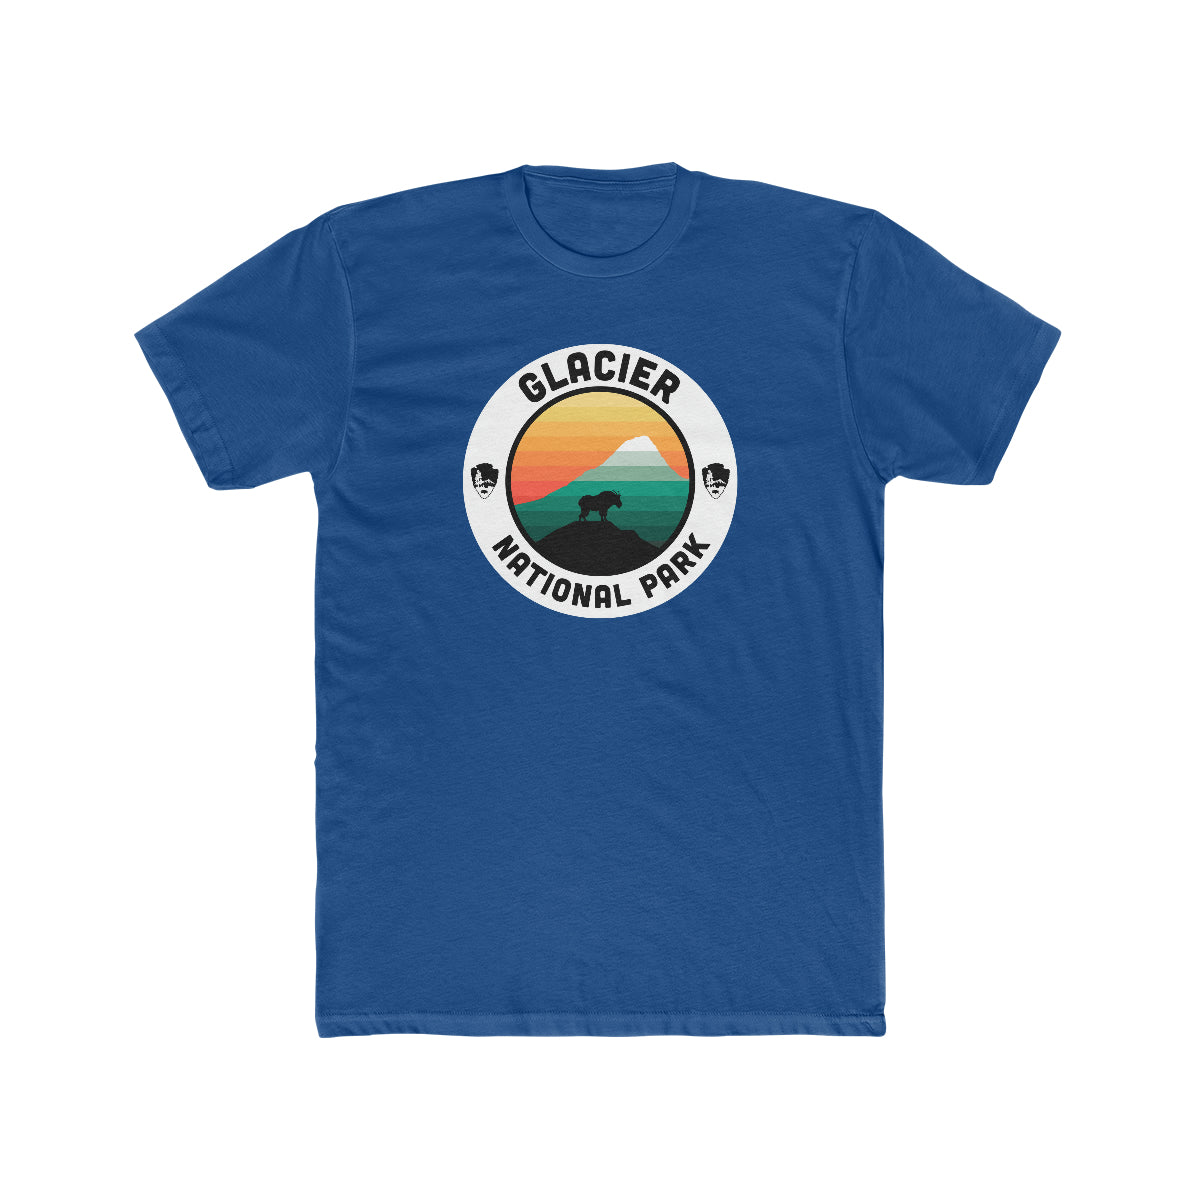 Glacier National Park T-Shirt - Round Badge Design